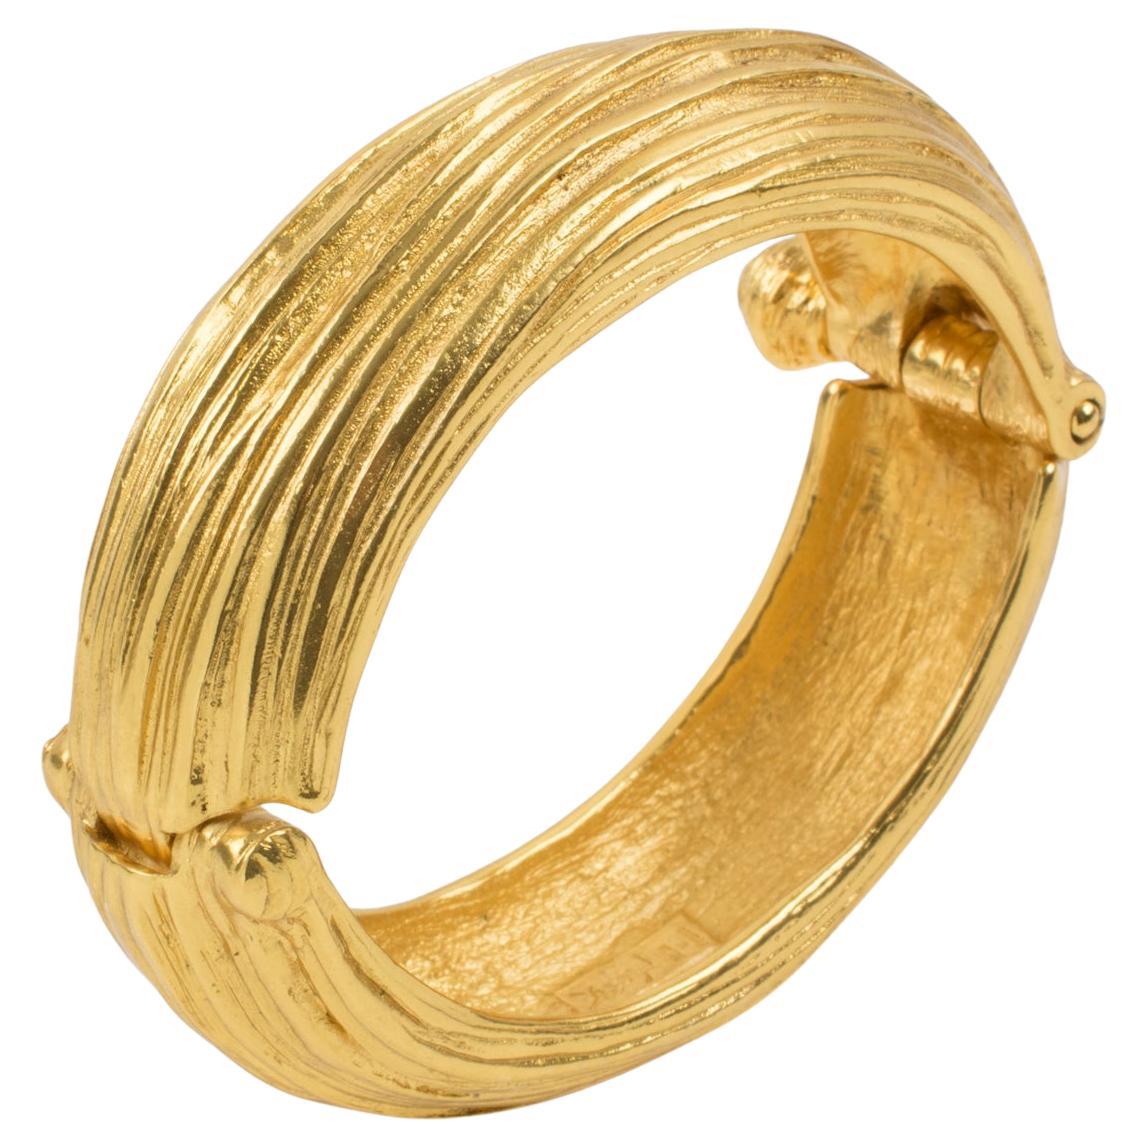 YSL Gold Bracelet Replica